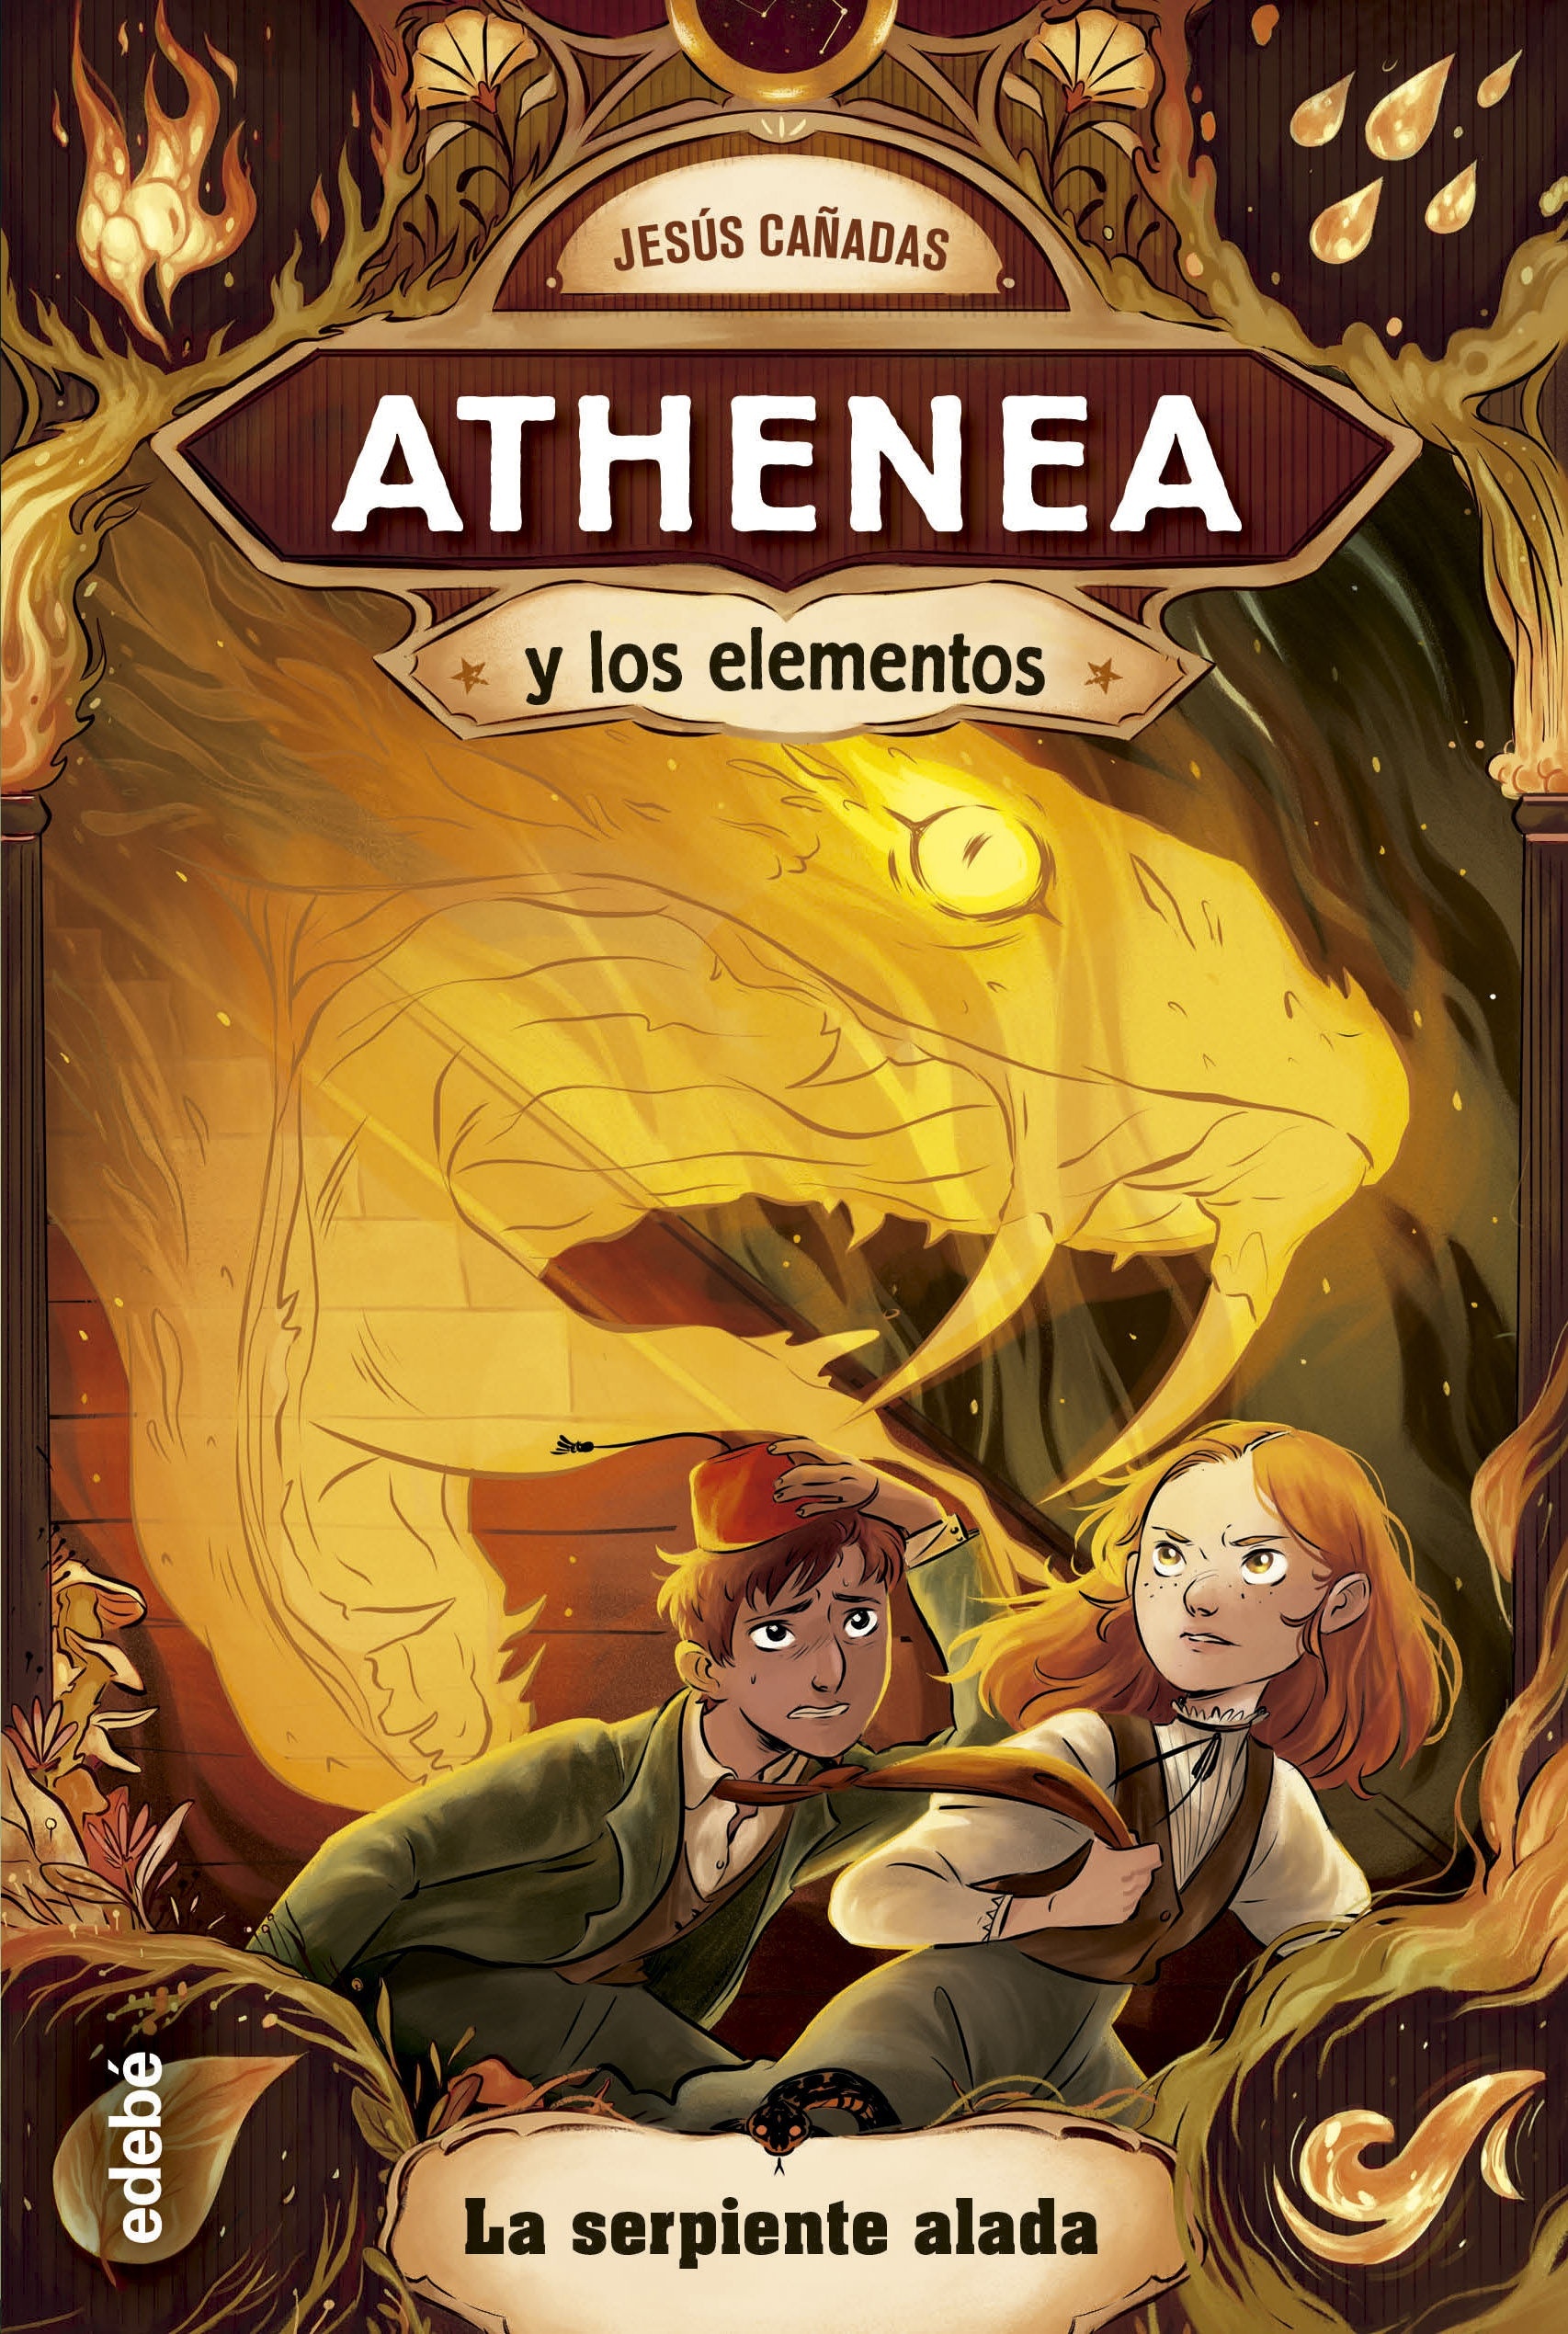 Serpiente alada, La "Athenea y los elementos 3"